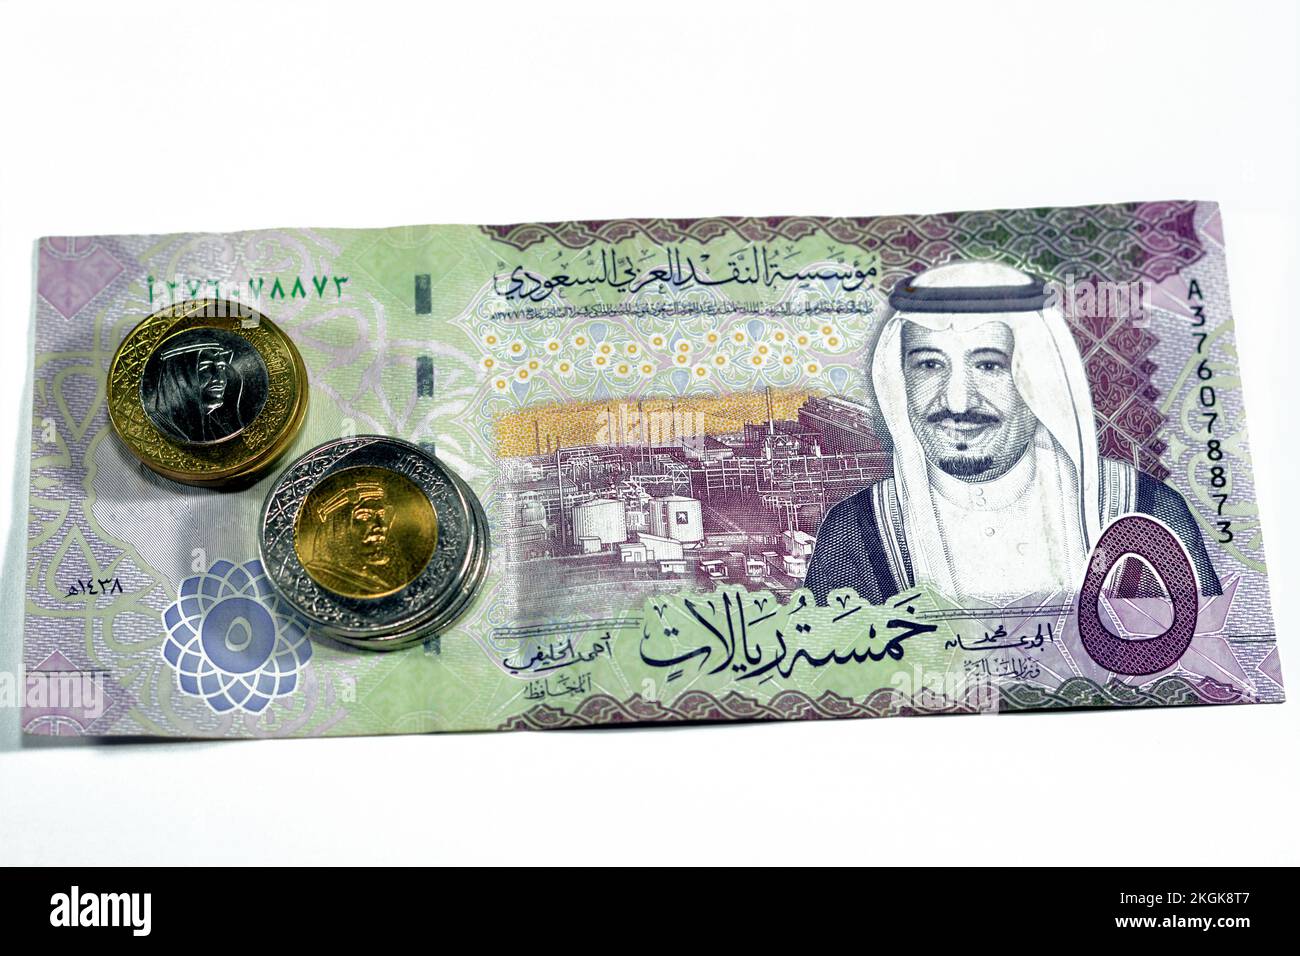 Auf der anderen Seite der 5 SAR stehen fünf Saudi-arabische Riyals Bargeld Banknotenstückelserie 1438 AH mit der Shaybah-Ölraffinerie in Rub' al Khali und König Salman Stockfoto